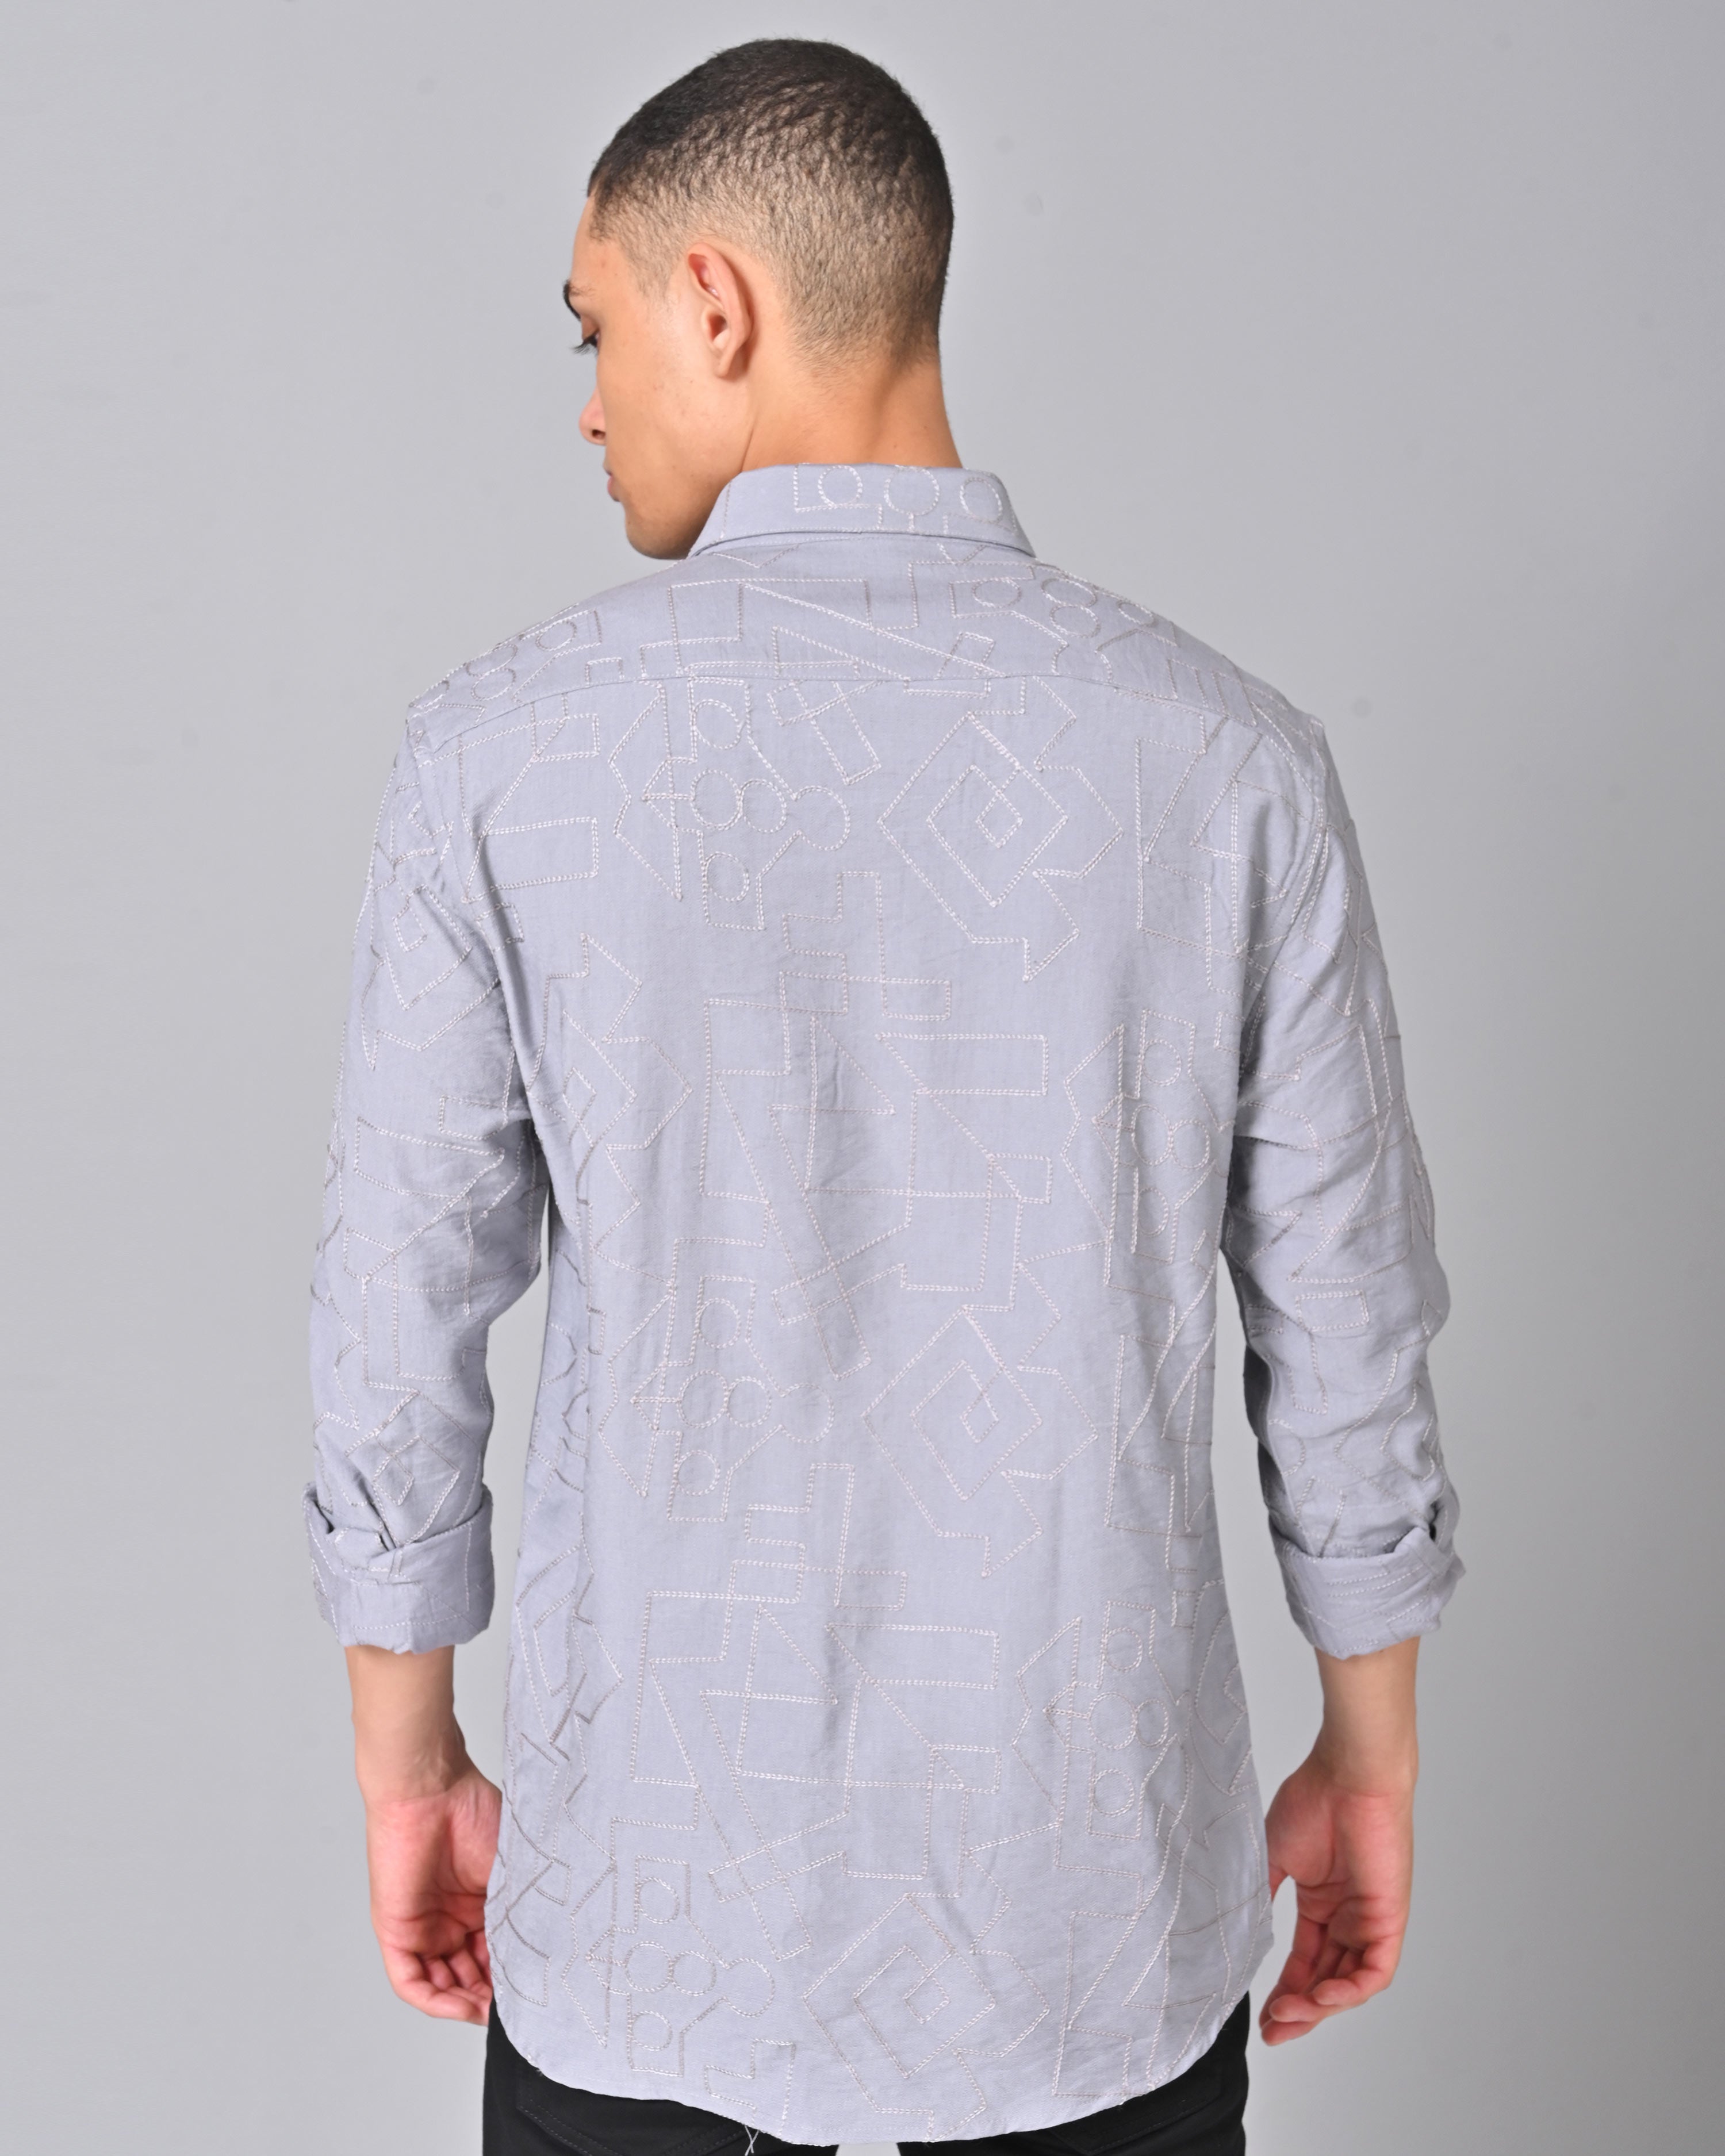 Men's Embroidered Full Sleeve Light Slate Blue Shirt